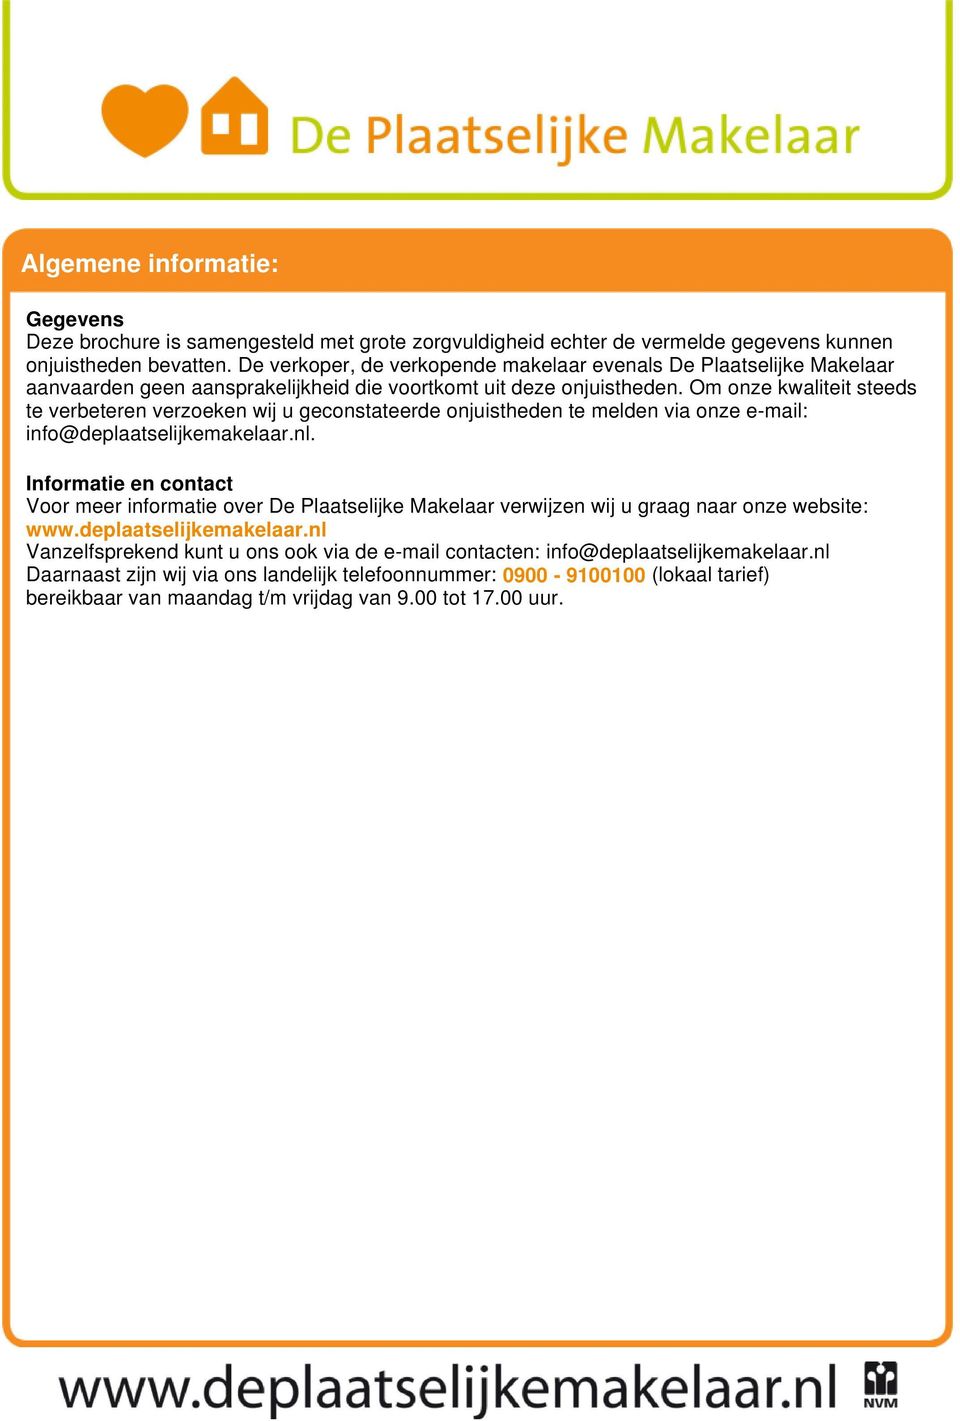 Om onze kwaliteit steeds te verbeteren verzoeken wij u geconstateerde onjuistheden te melden via onze e-mail: info@deplaatselijkemakelaar.nl.